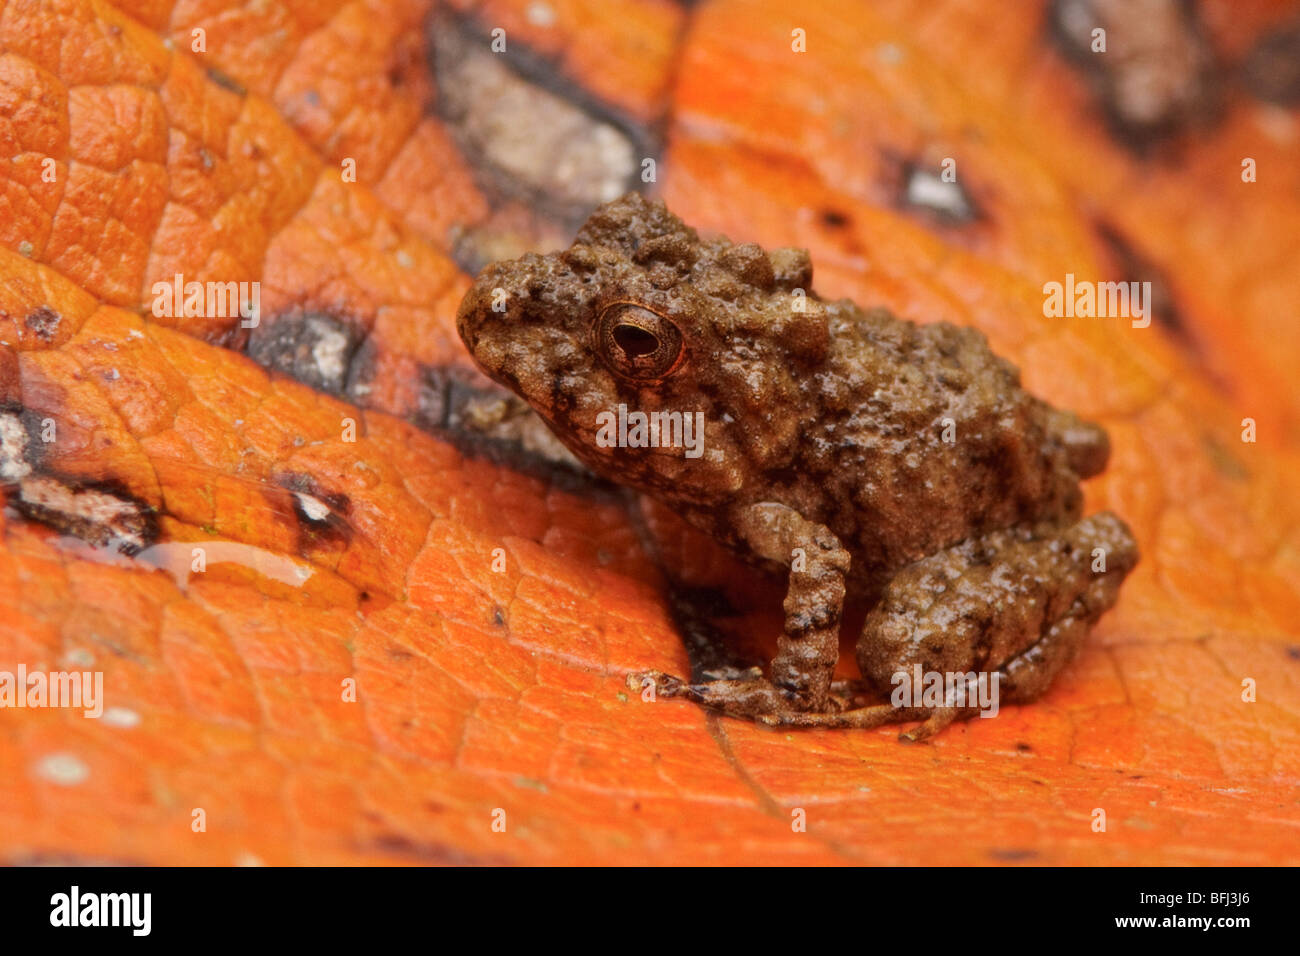 A treefrog in the Tandayapa Valley of Ecuador. Stock Photo